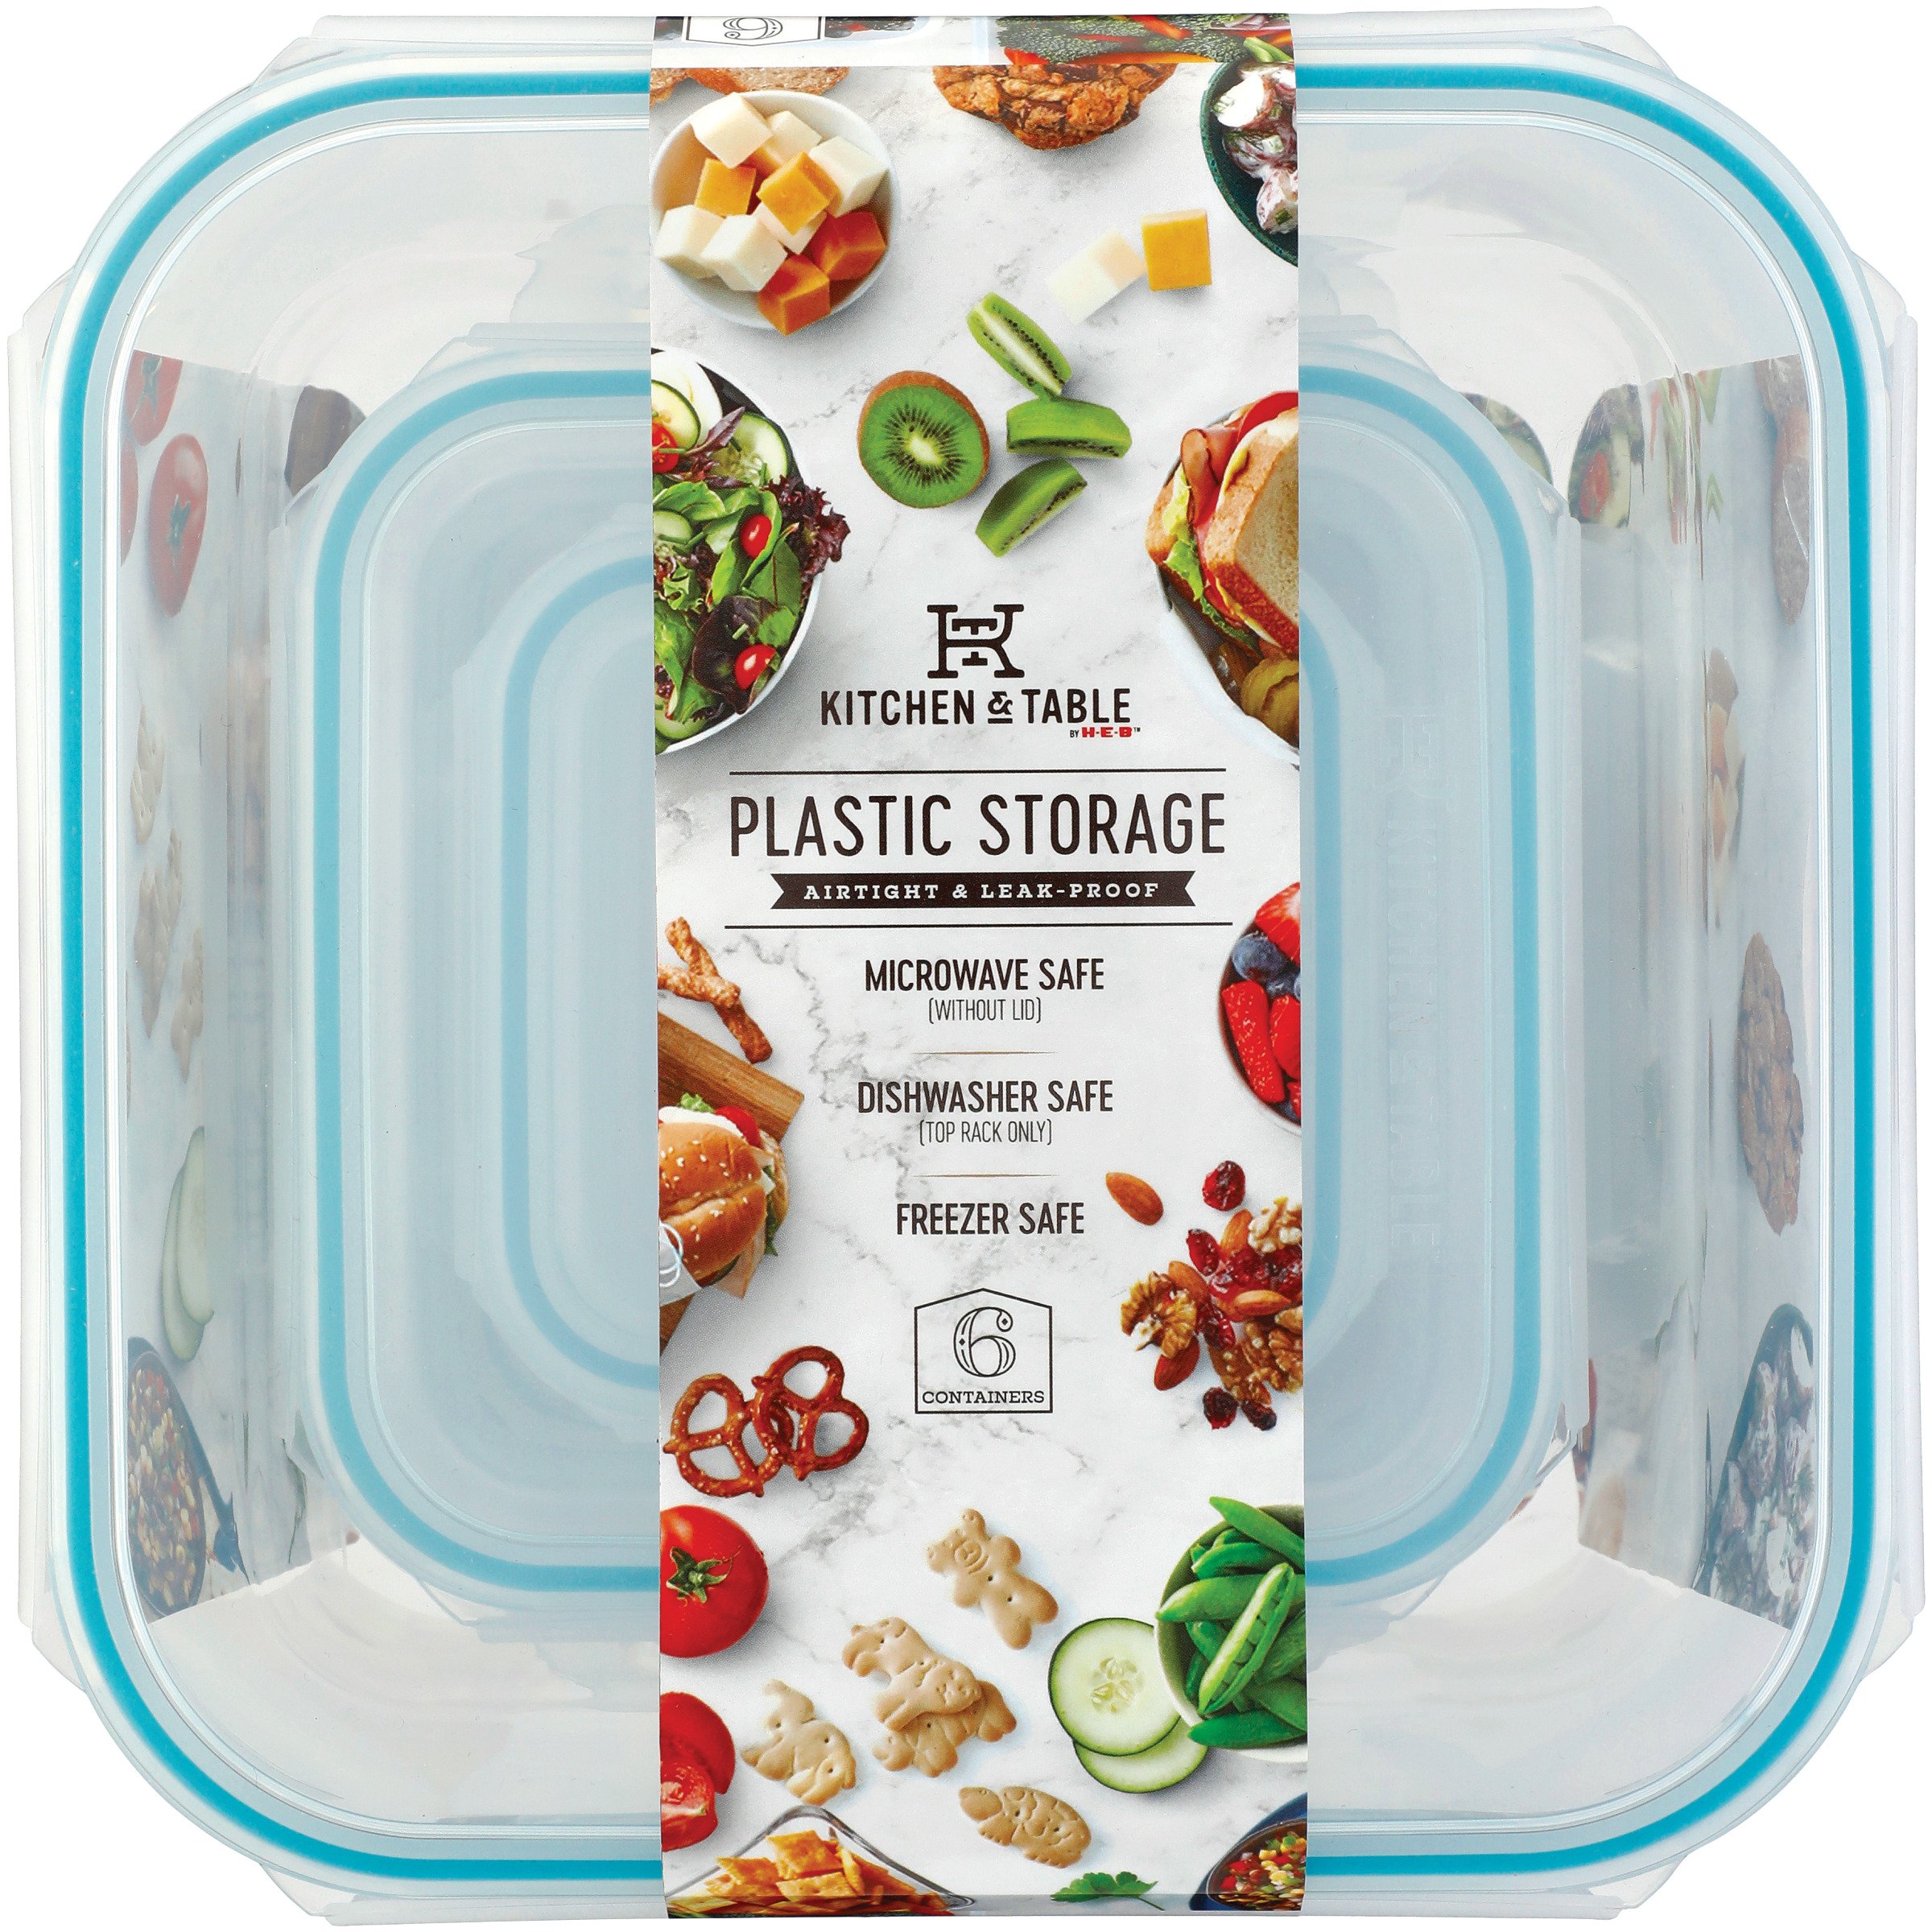 Corelle Pyrex Glass Storage Set - Shop Food Storage at H-E-B